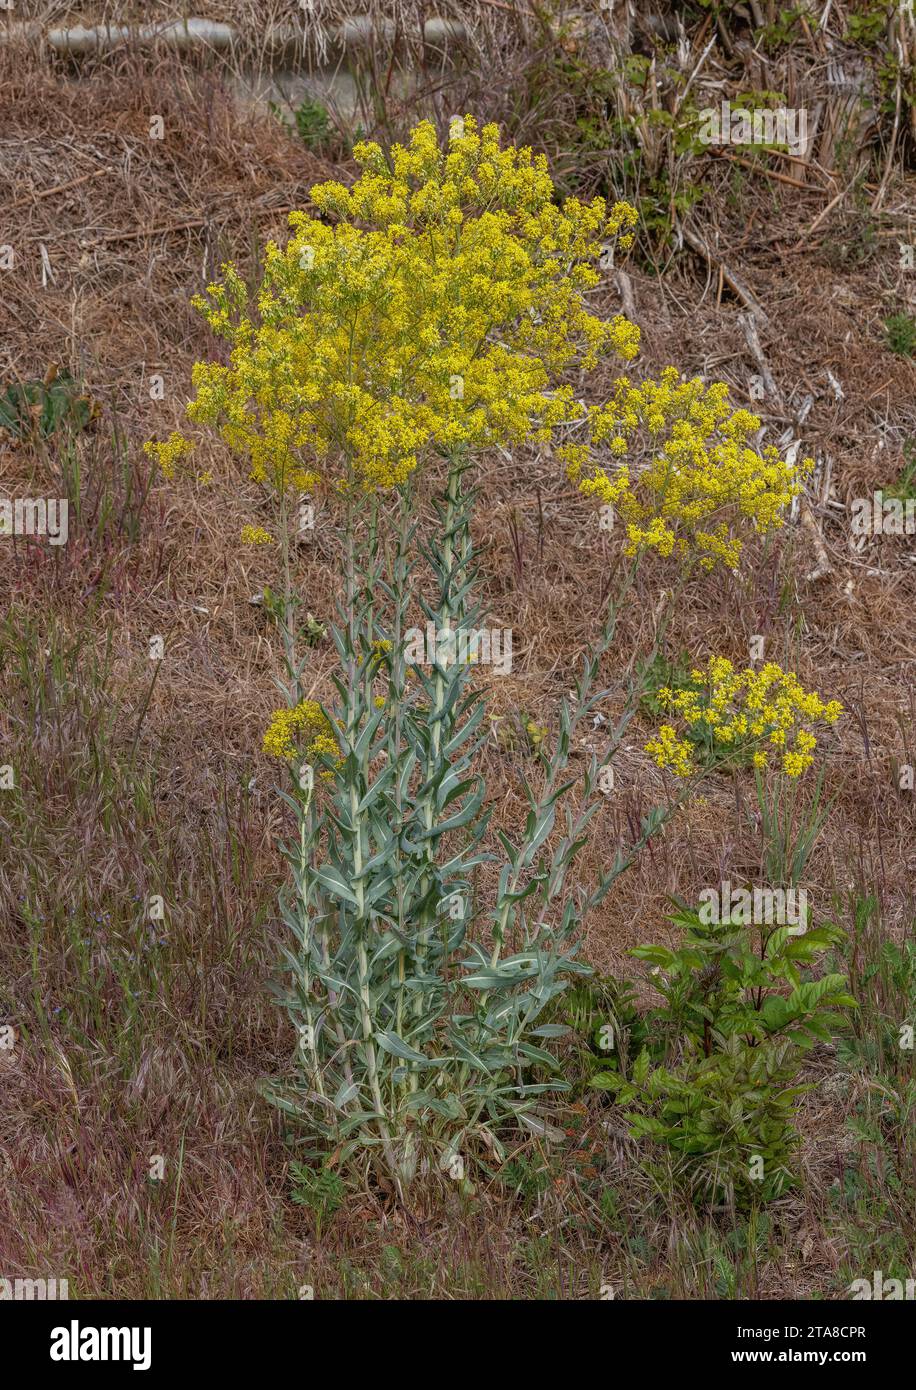 Woad, Isatis tinctoria in flower in dry grassland, Pyrenees. Stock Photo